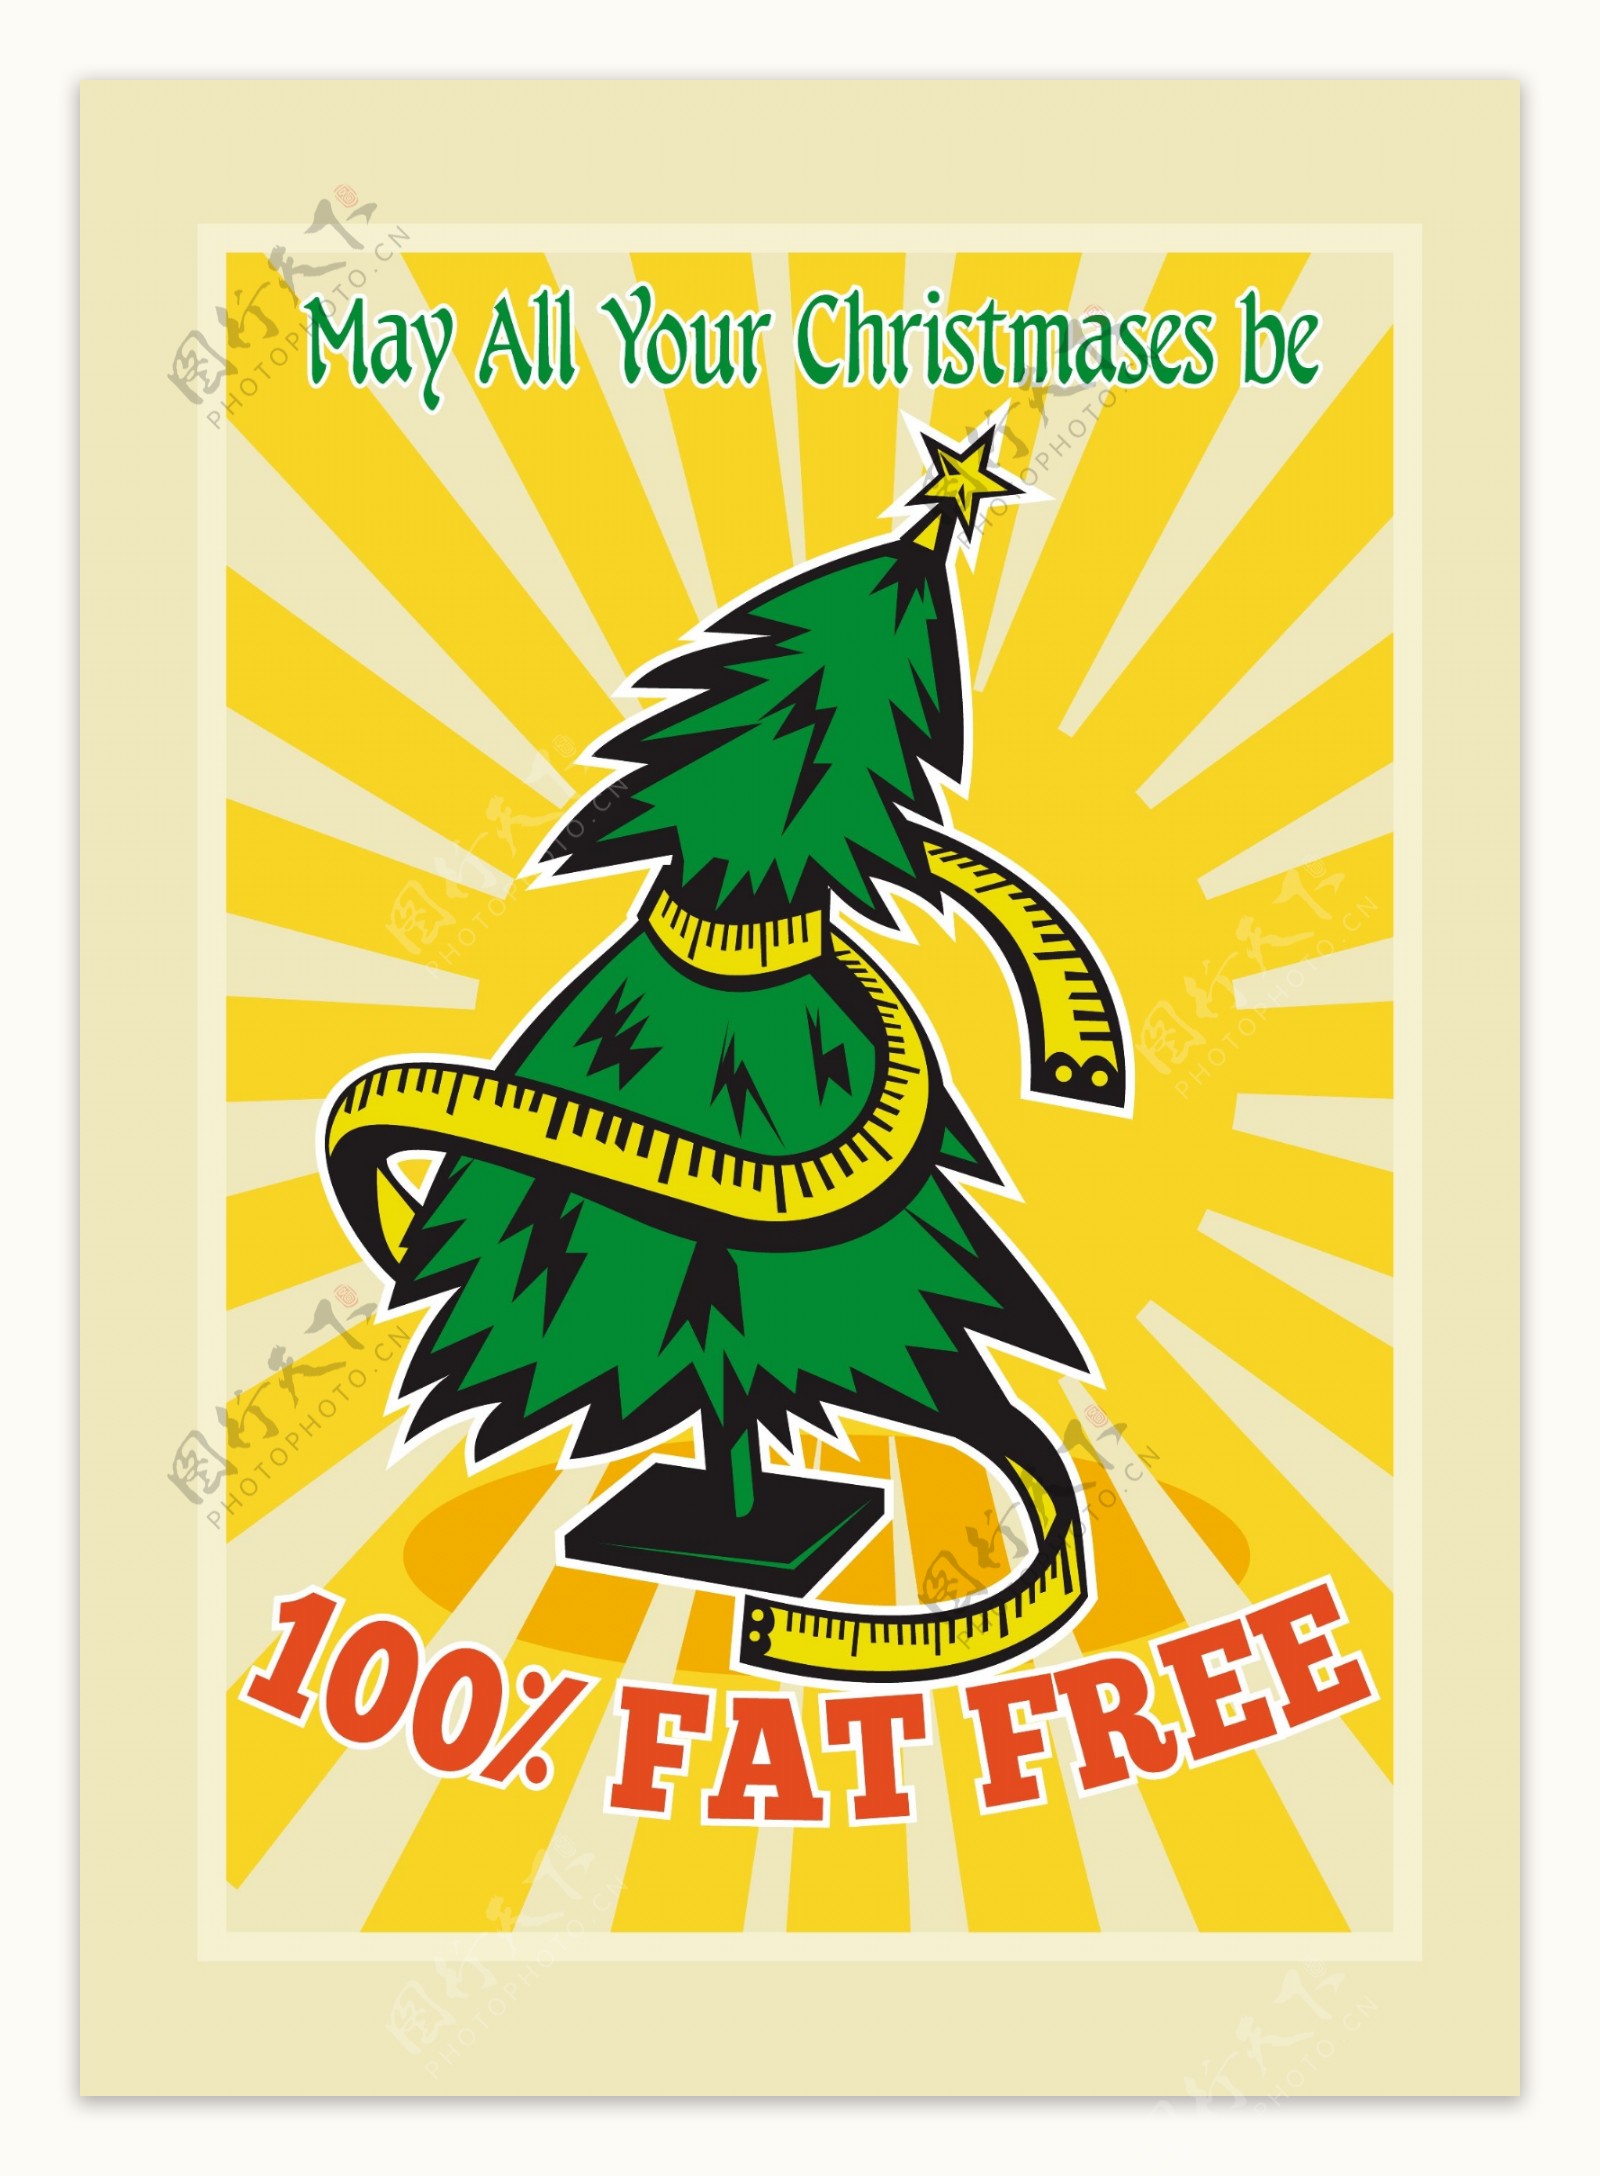 无脂肪的圣诞树的卷尺